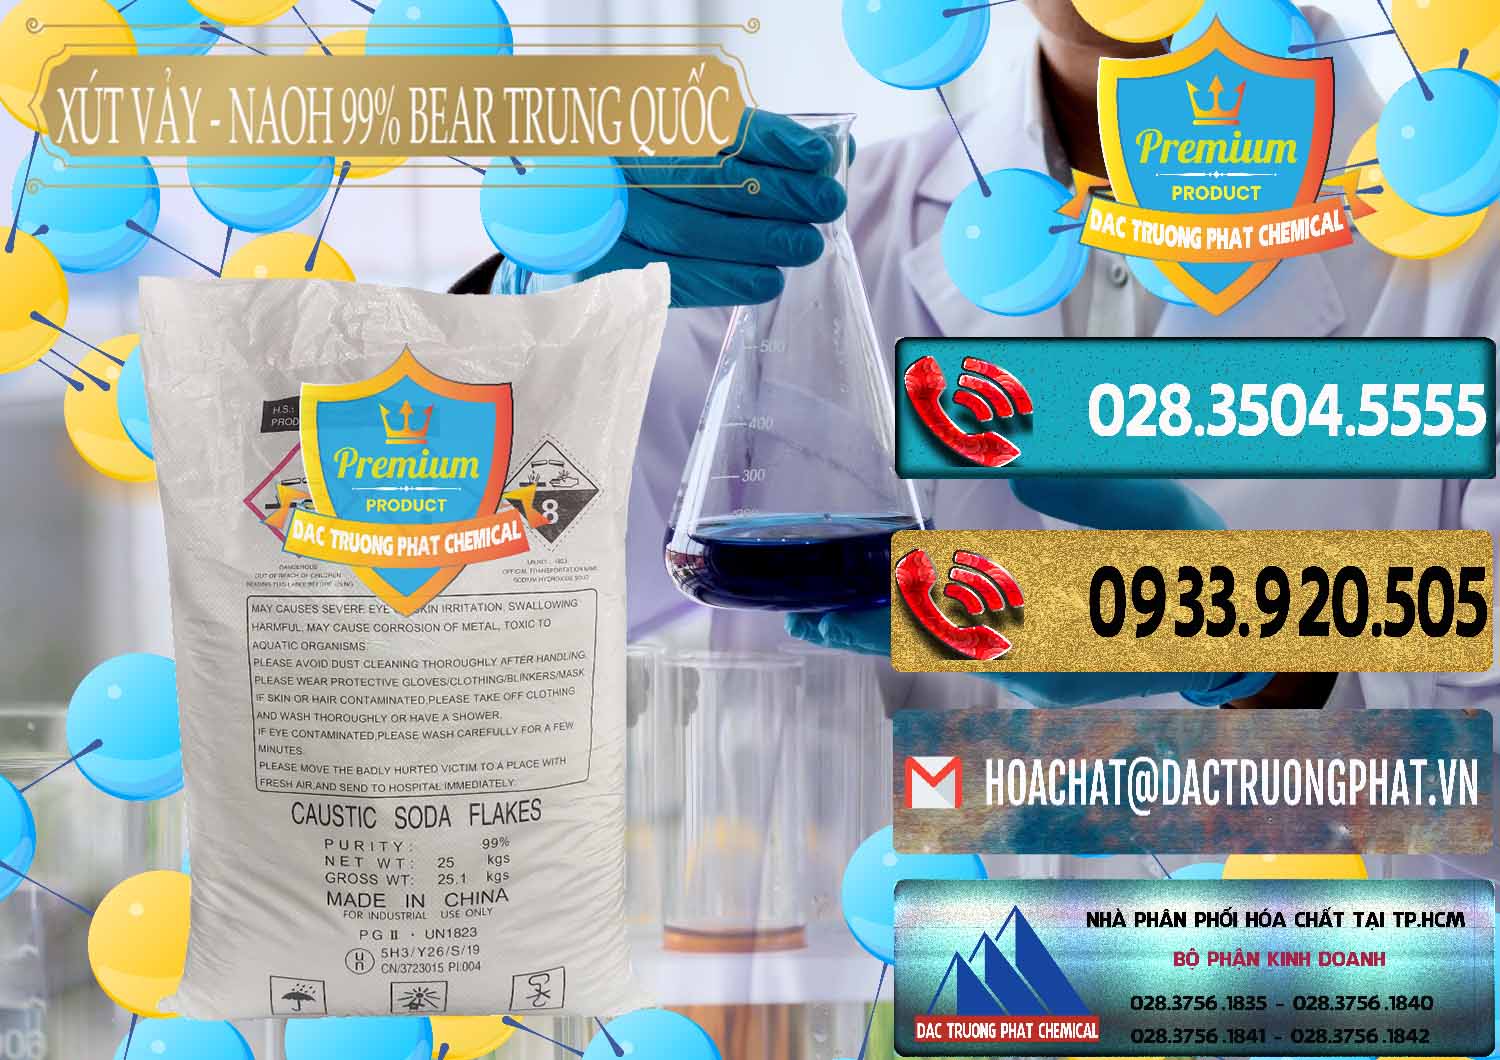 Cung cấp - bán Xút Vảy - NaOH Vảy 99% Bear Sơn Đông Trung Quốc China - 0175 - Nơi phân phối ( cung cấp ) hóa chất tại TP.HCM - hoachatdetnhuom.com